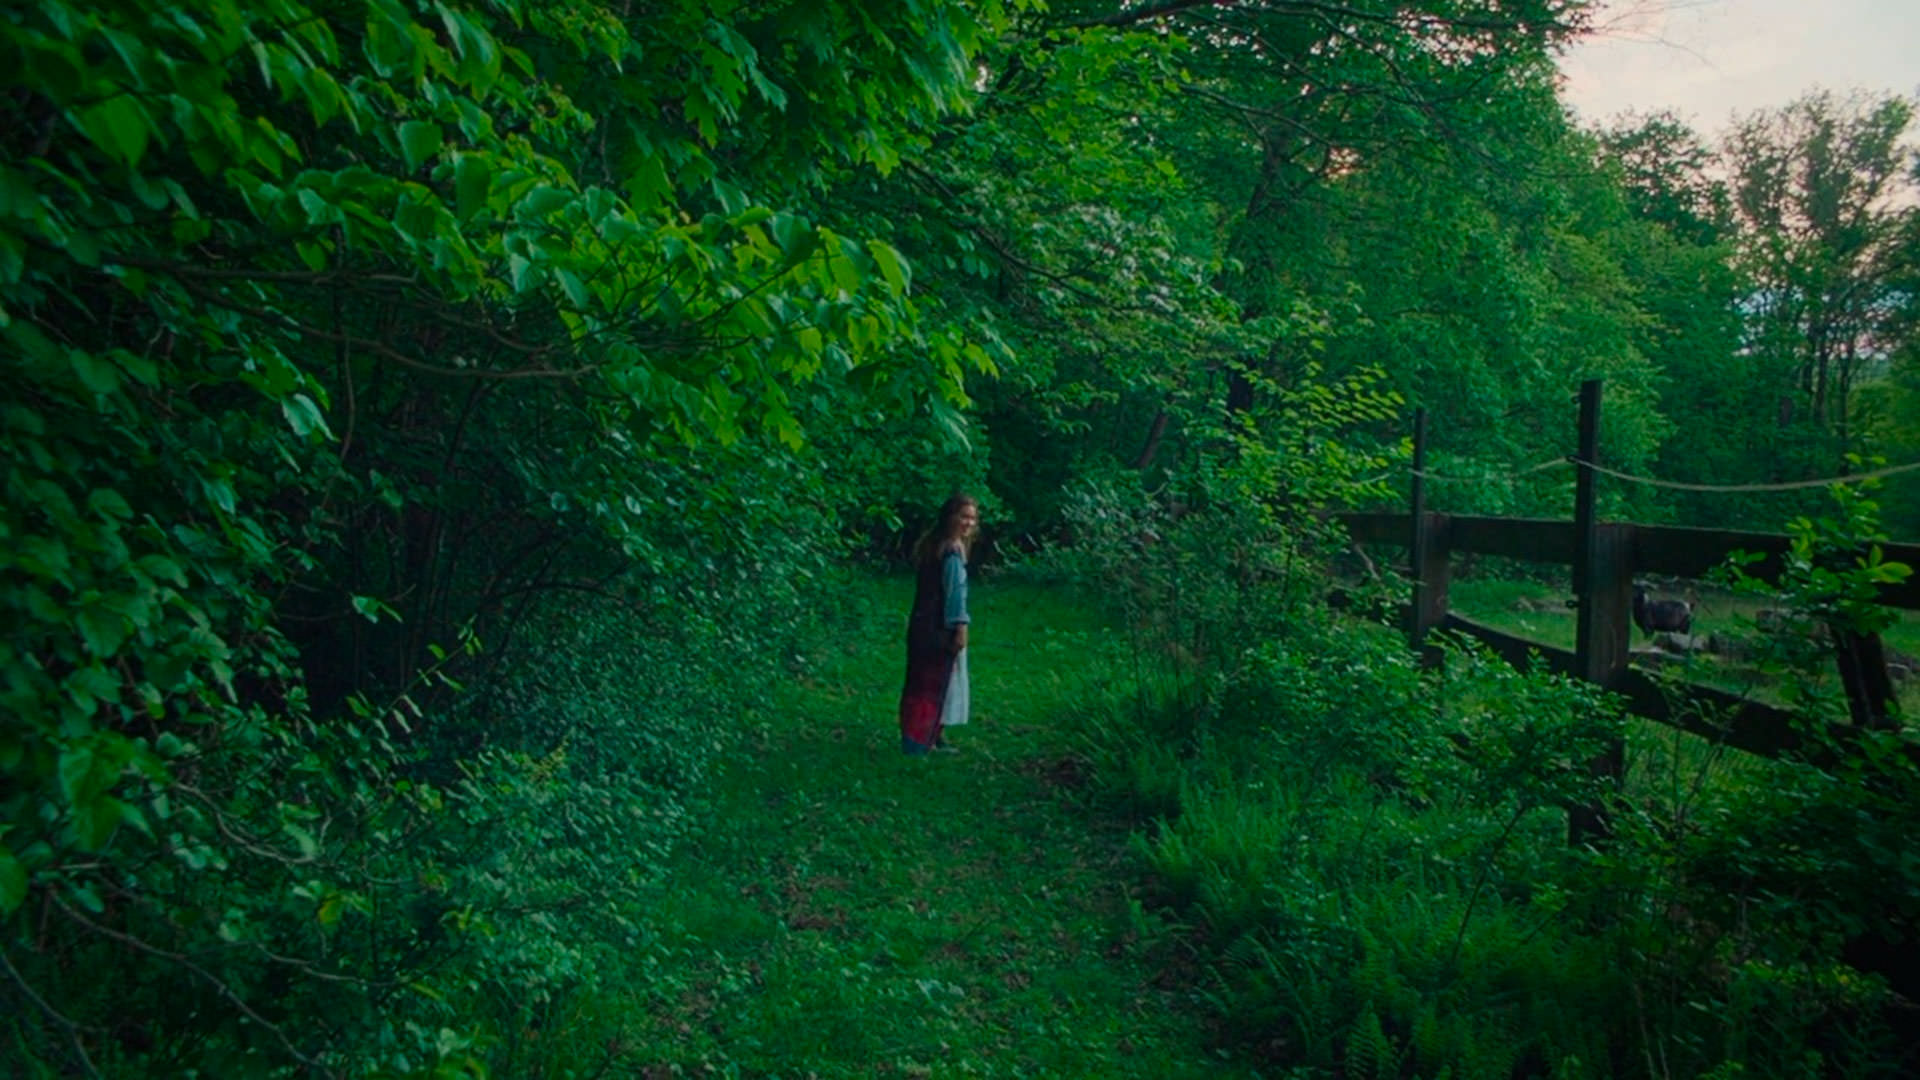 هیلی لو ریچاردسون در صحنه‌ای از فیلم پس از جوانی کوگونادا که توسط فضای سبز احاطه شده است